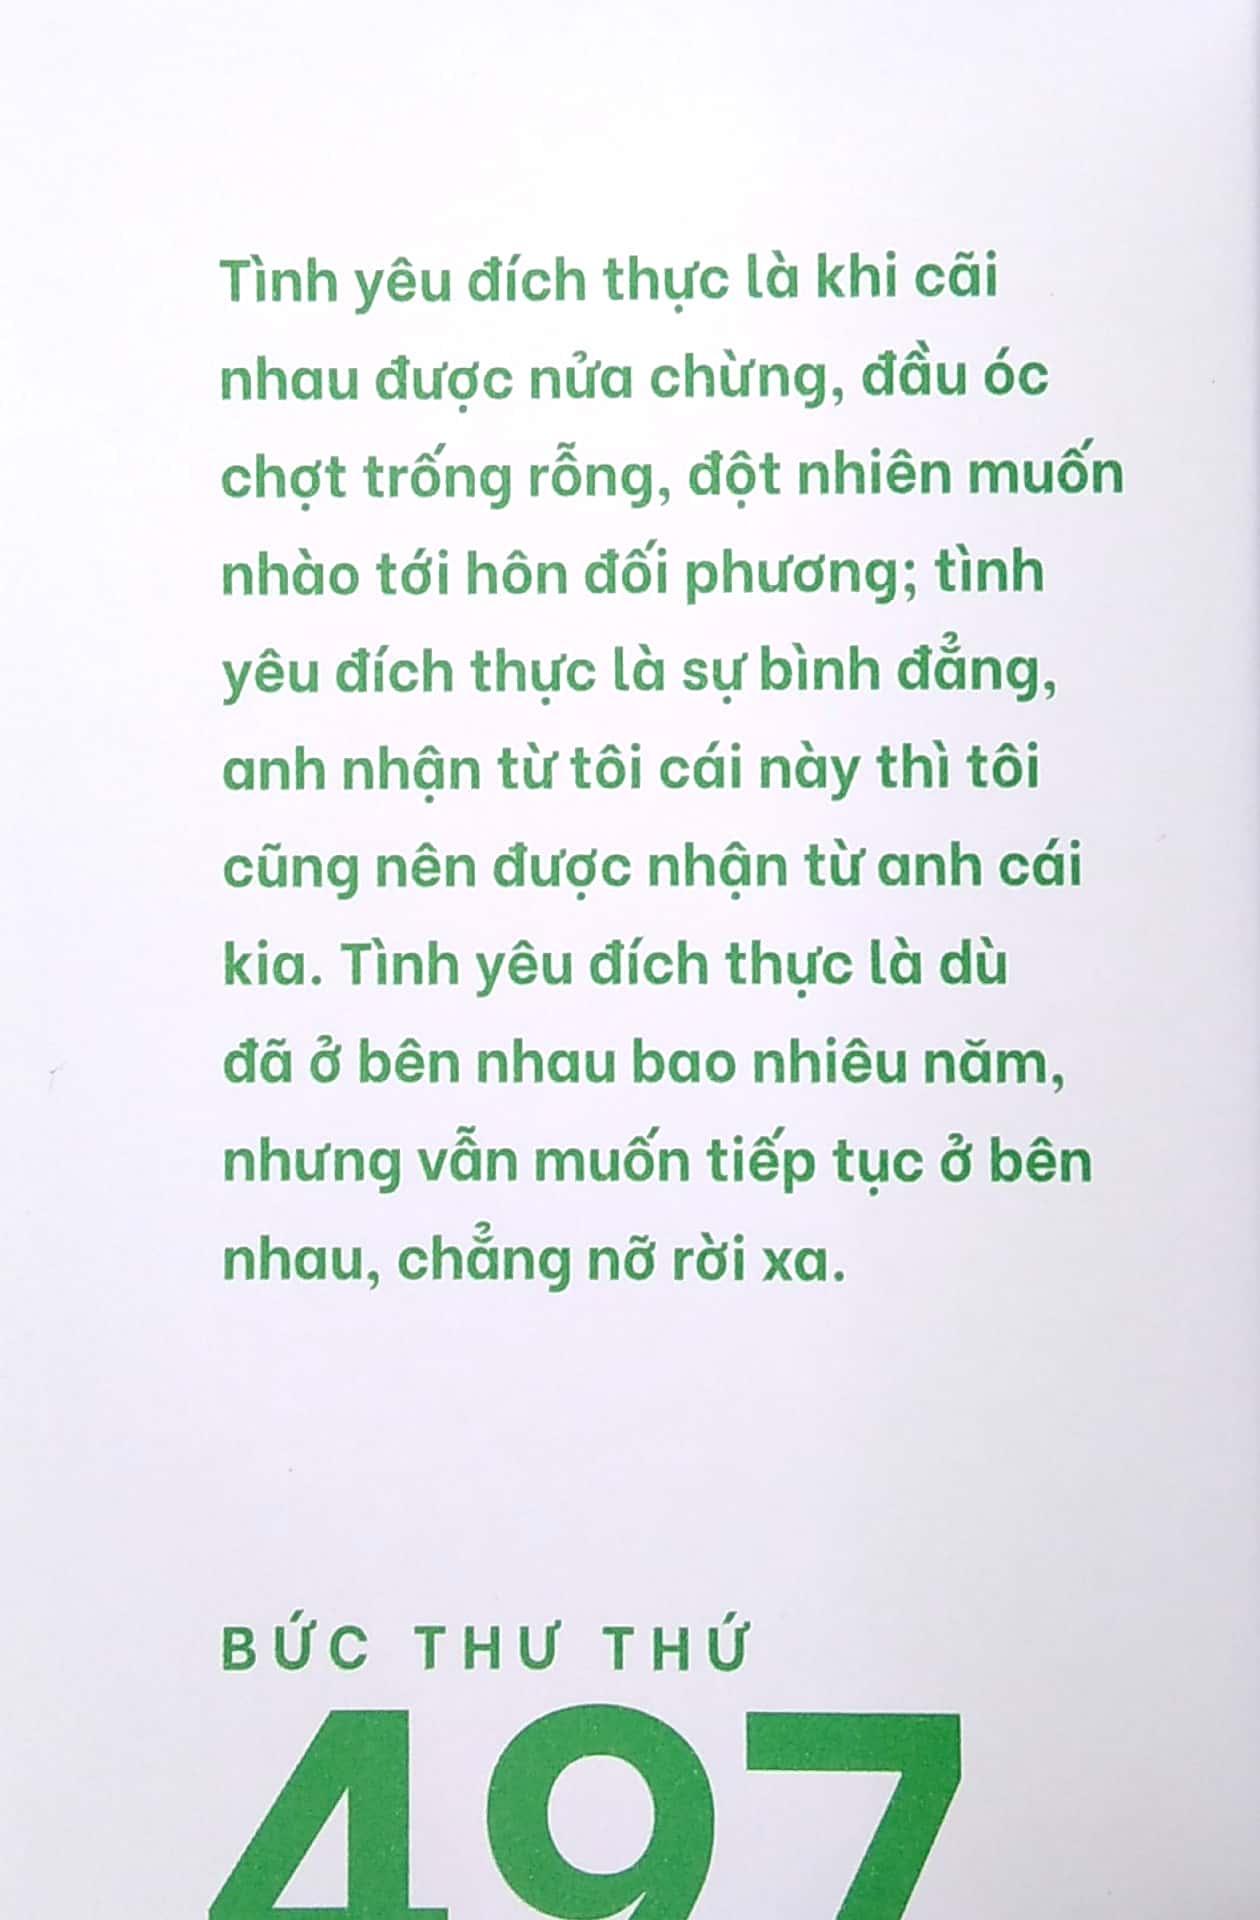 999 Lá Thư Gửi Cho Chính Mình - Phiên Bản Sổ Tay - Tập 6